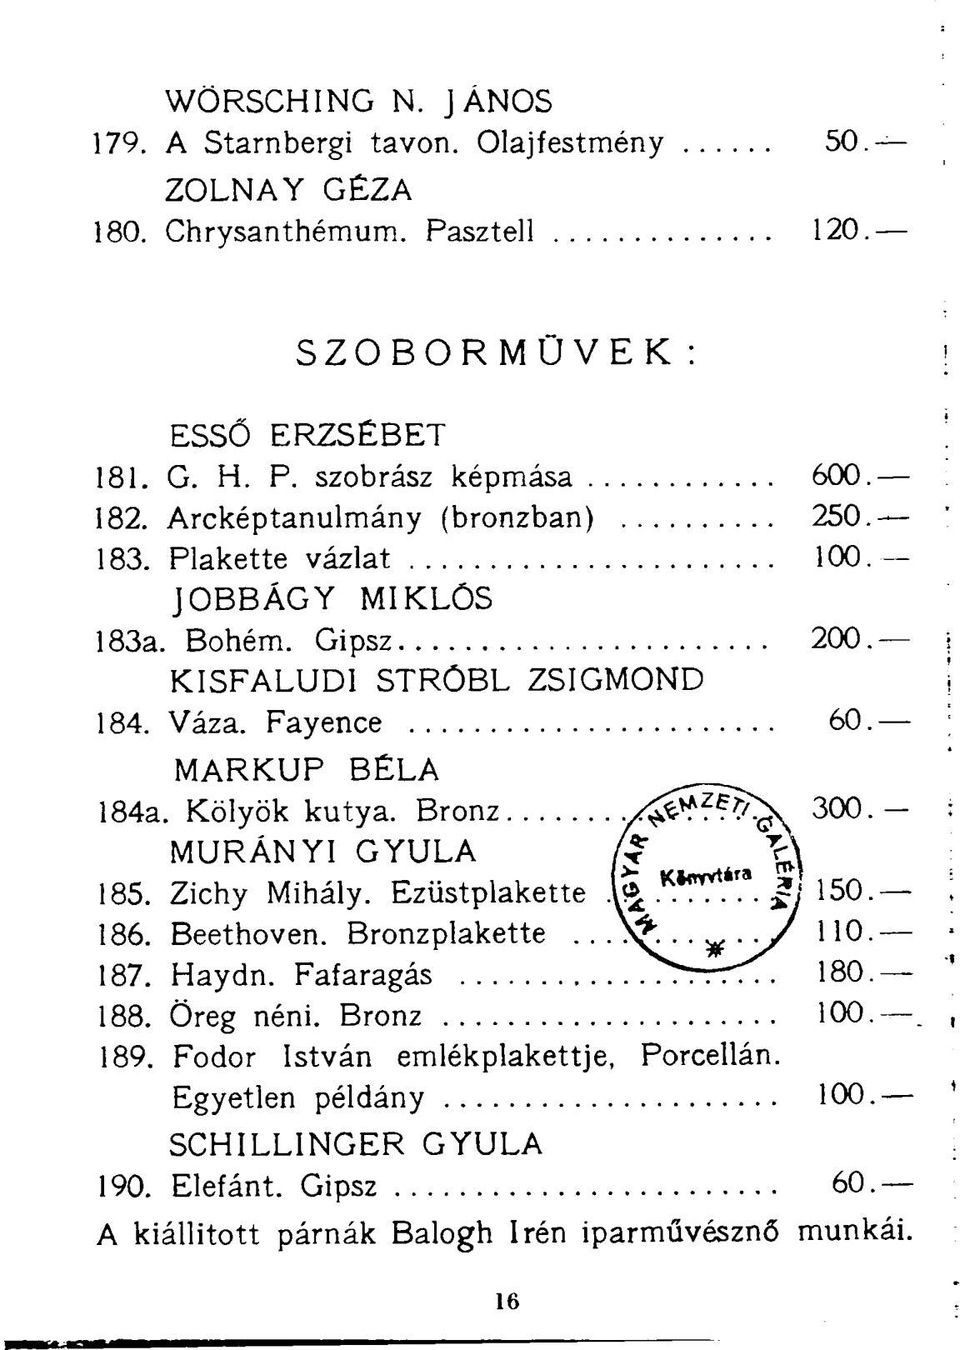 Bronz y ^ ^ ^ y 300.- MURÁNYI GYULA /f 185. Zichy Mihály. Ezüstplakette.VTT?" $ 150. 186. Beethoven. Bronzplakette...^..^.y/ 110. 187. Haydn. Fafaragás ^rrt^. 180. 188.